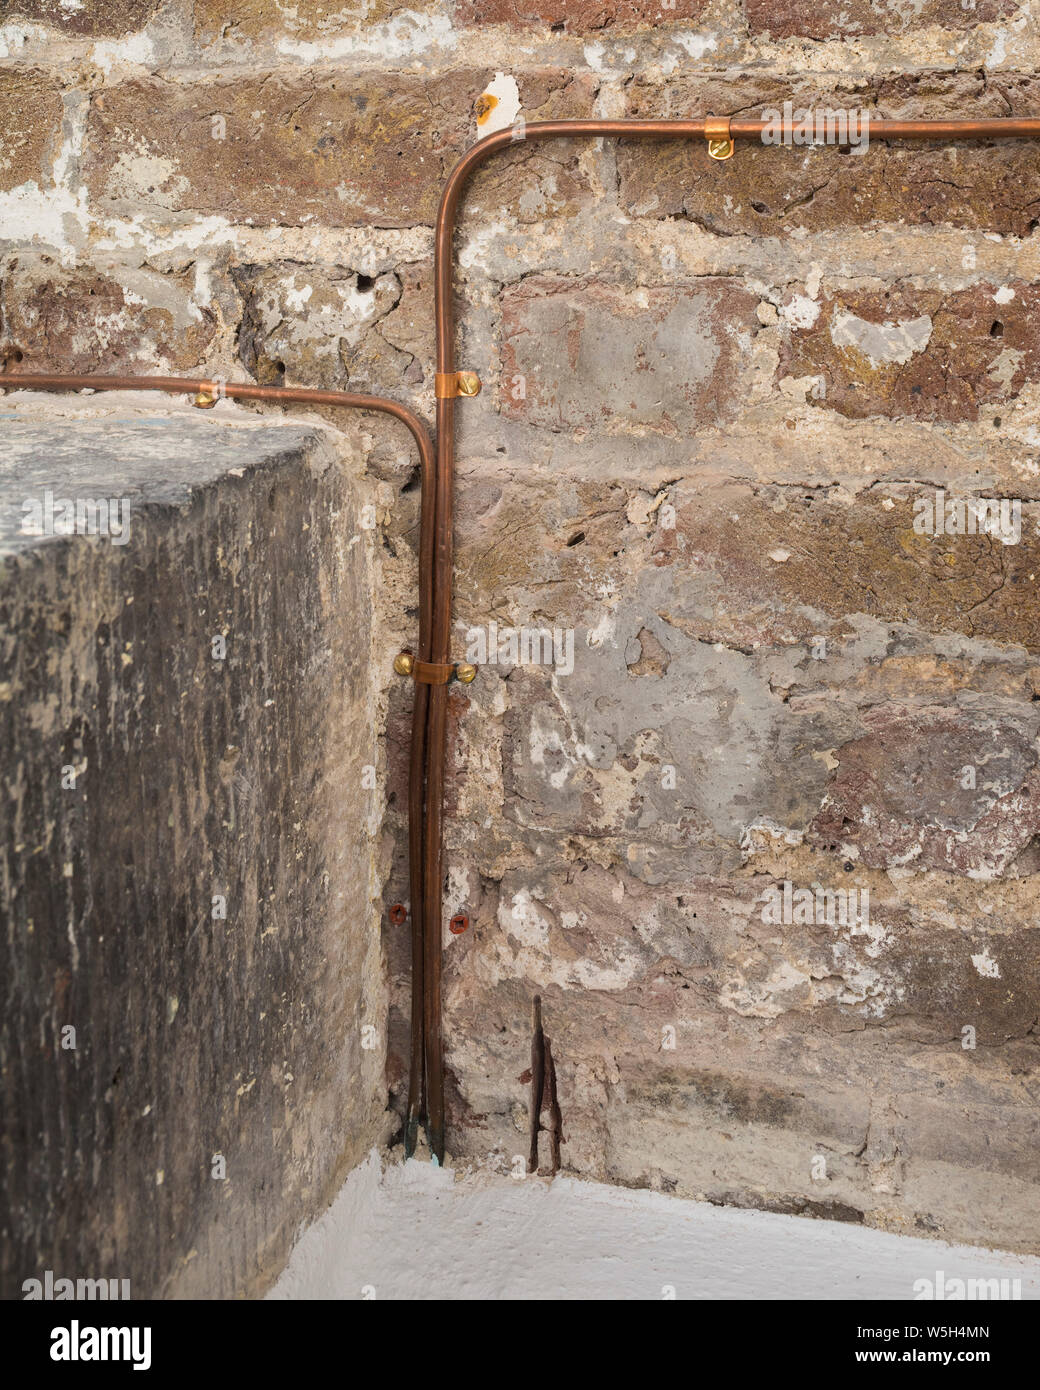 Albañilería y pipeworks. Cripta de la Iglesia de Cristo de Spitalfields, Londres, Reino Unido. Arquitecto: Dow Jones de arquitectos, 2018. Foto de stock